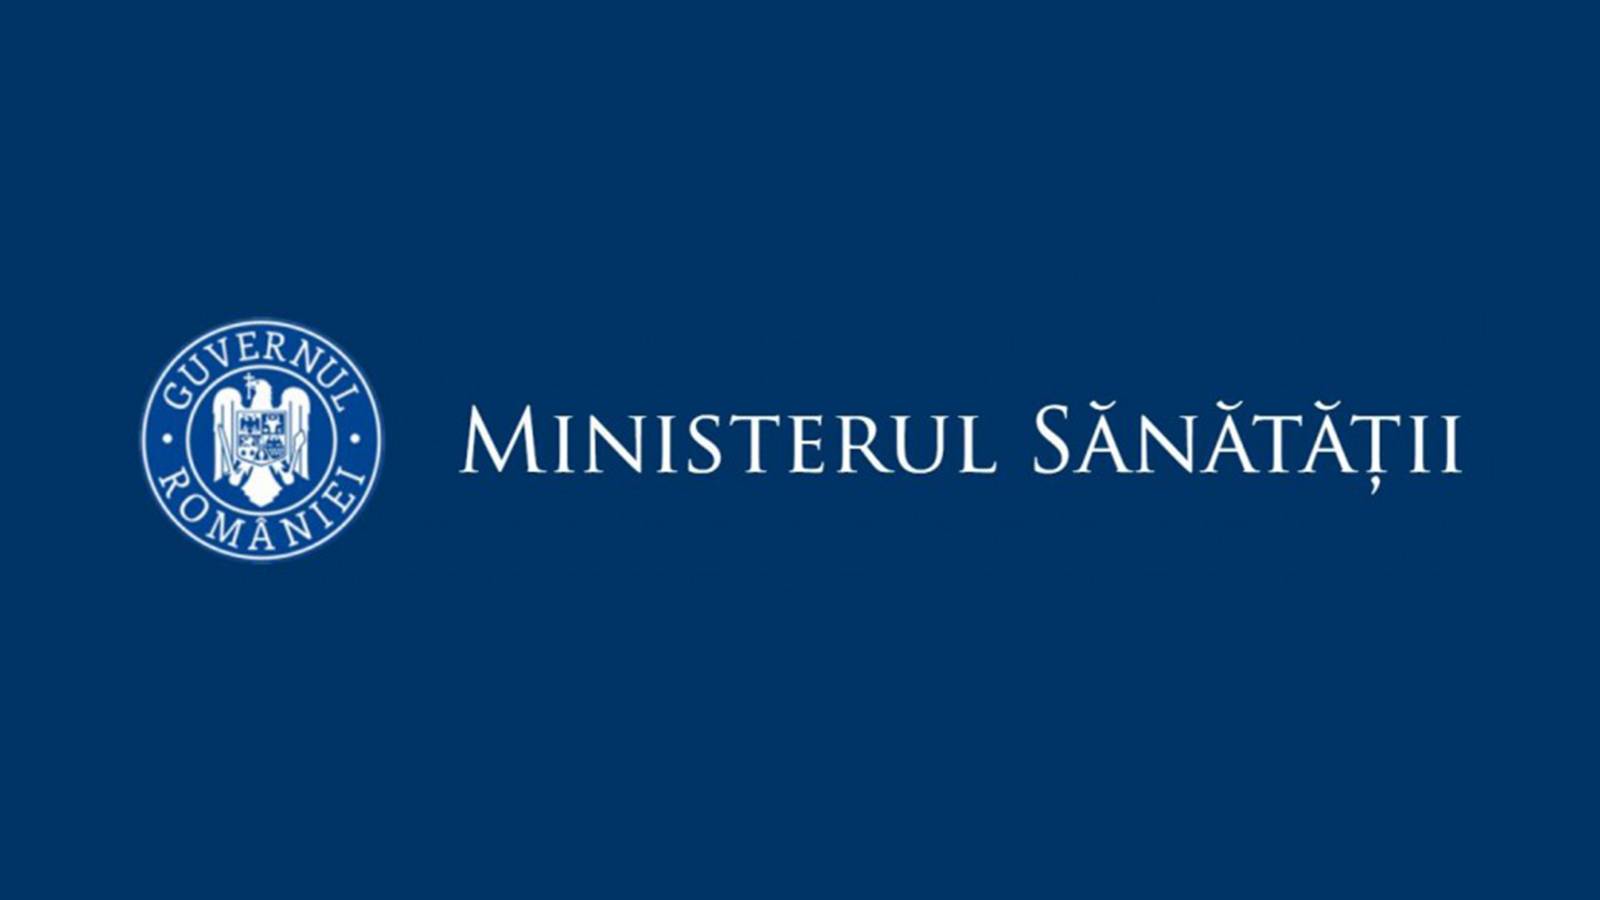 Ministerul Sanatatii Ratele de Incidenta in Romania pe 18 Mai